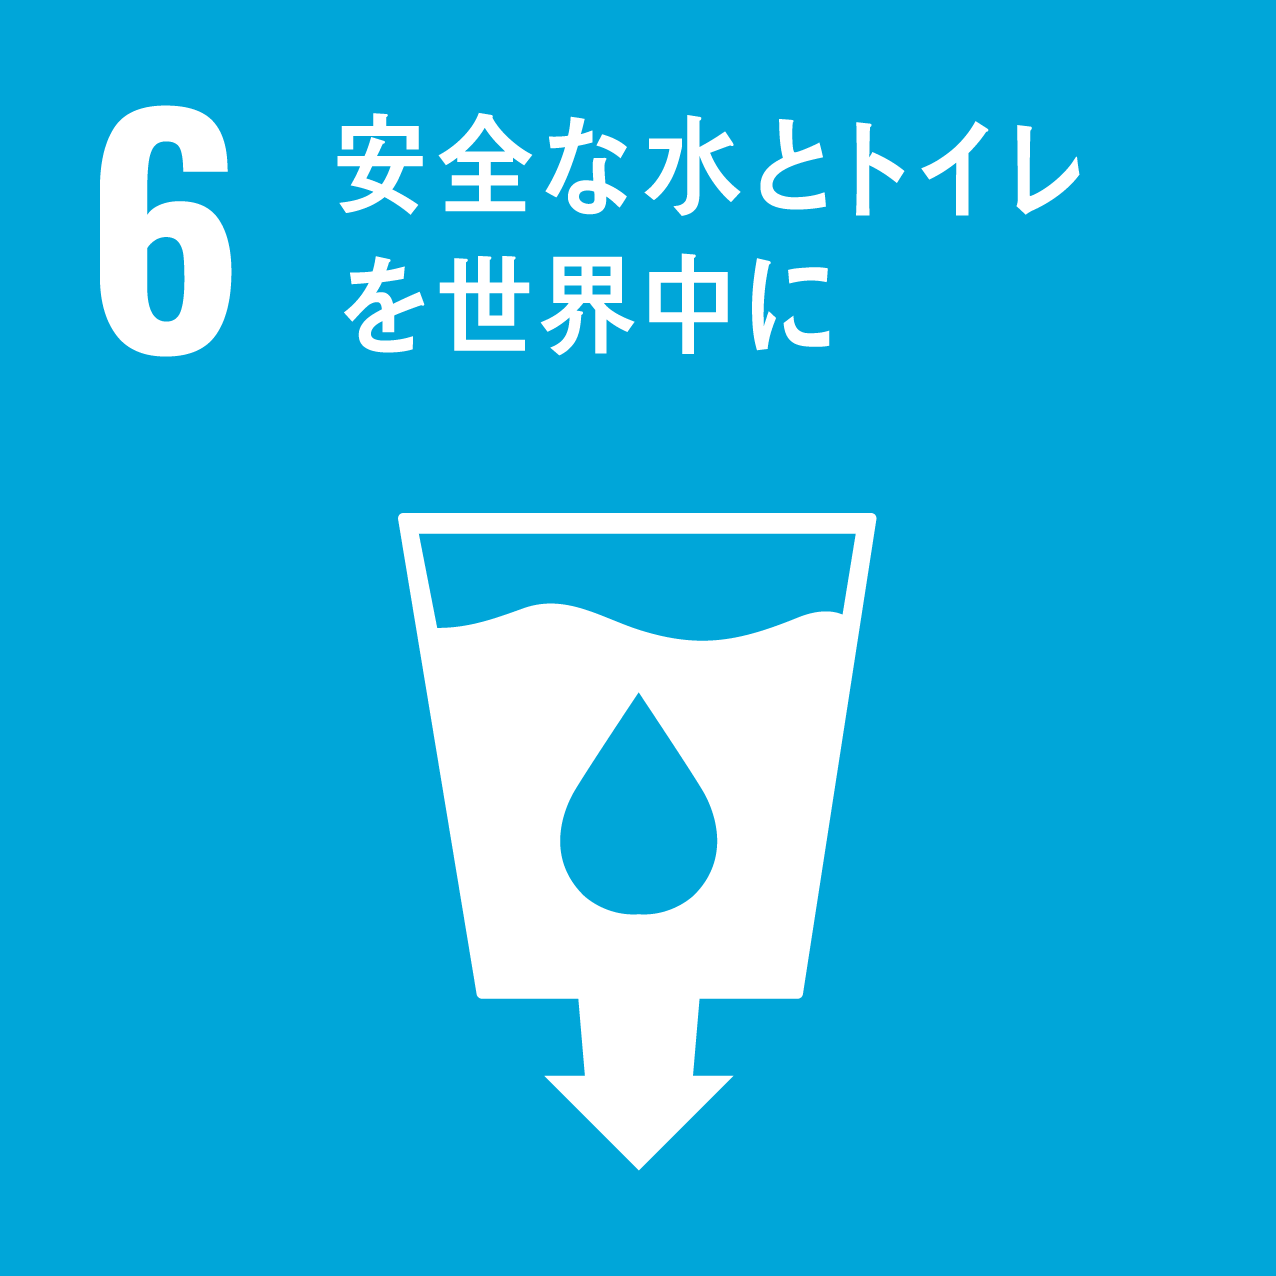 6：安全な水とトイレを世界中に。